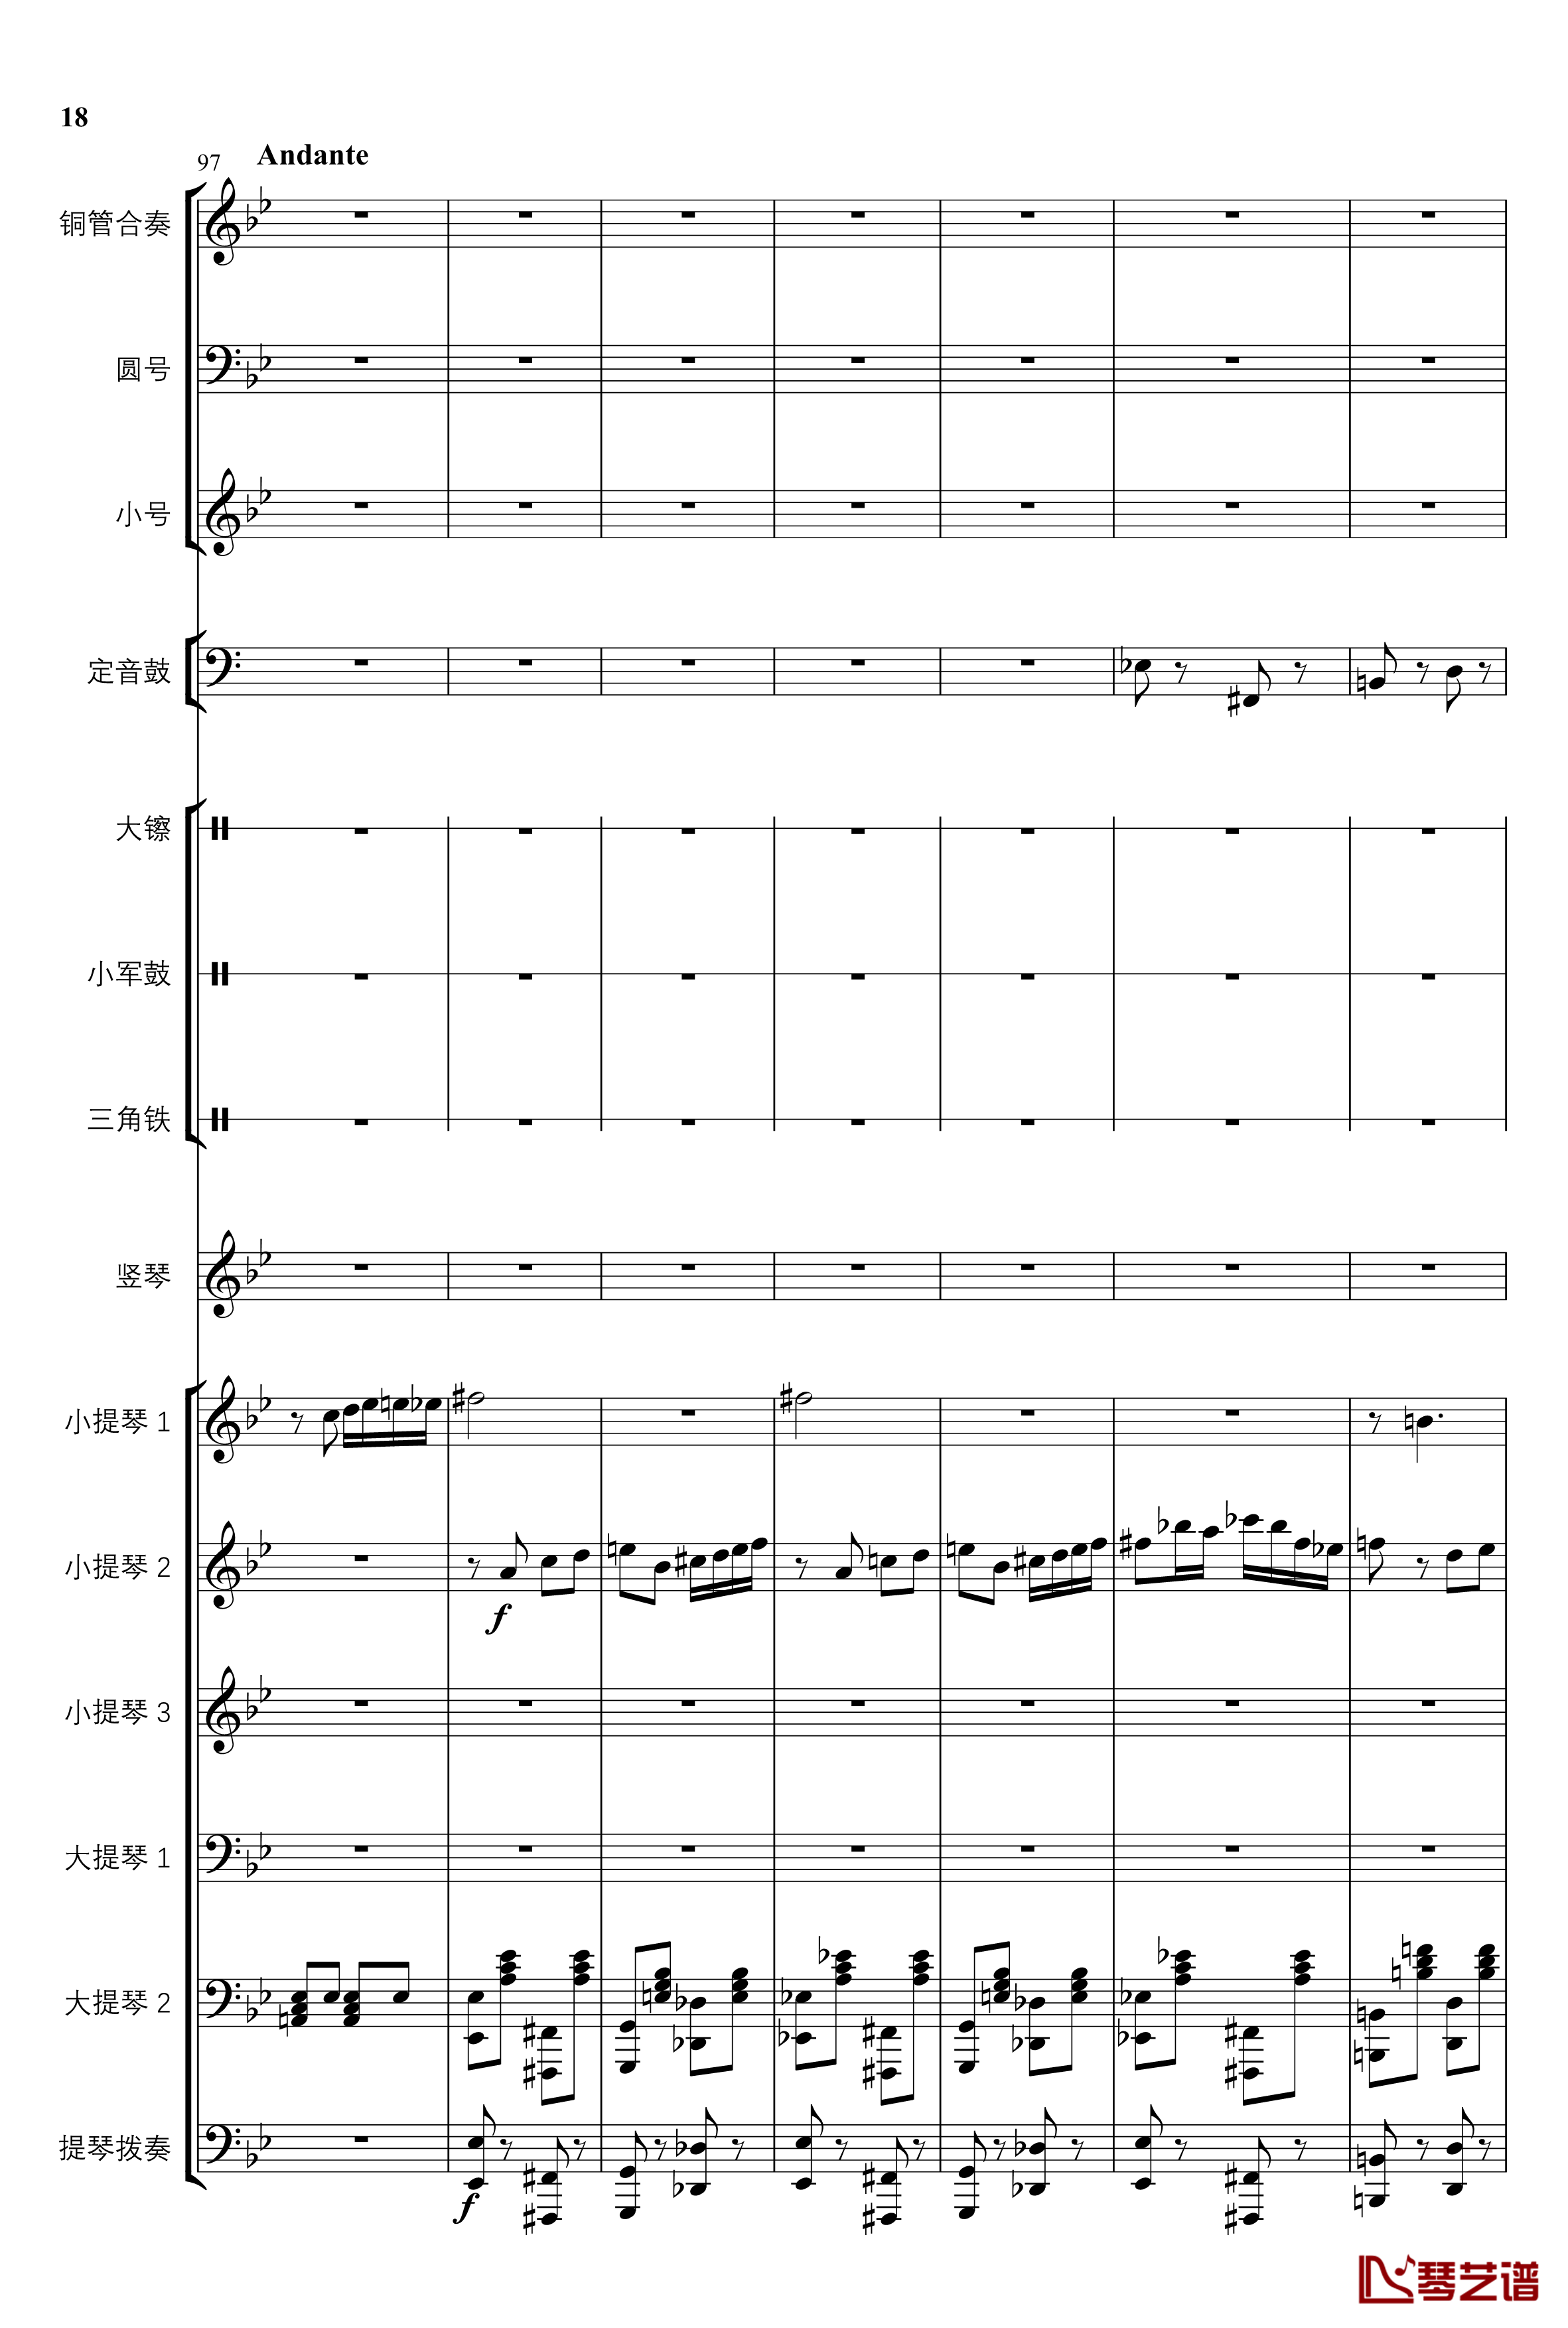 2013考试周的叙事曲钢琴谱-管弦乐重编曲版-江畔新绿18